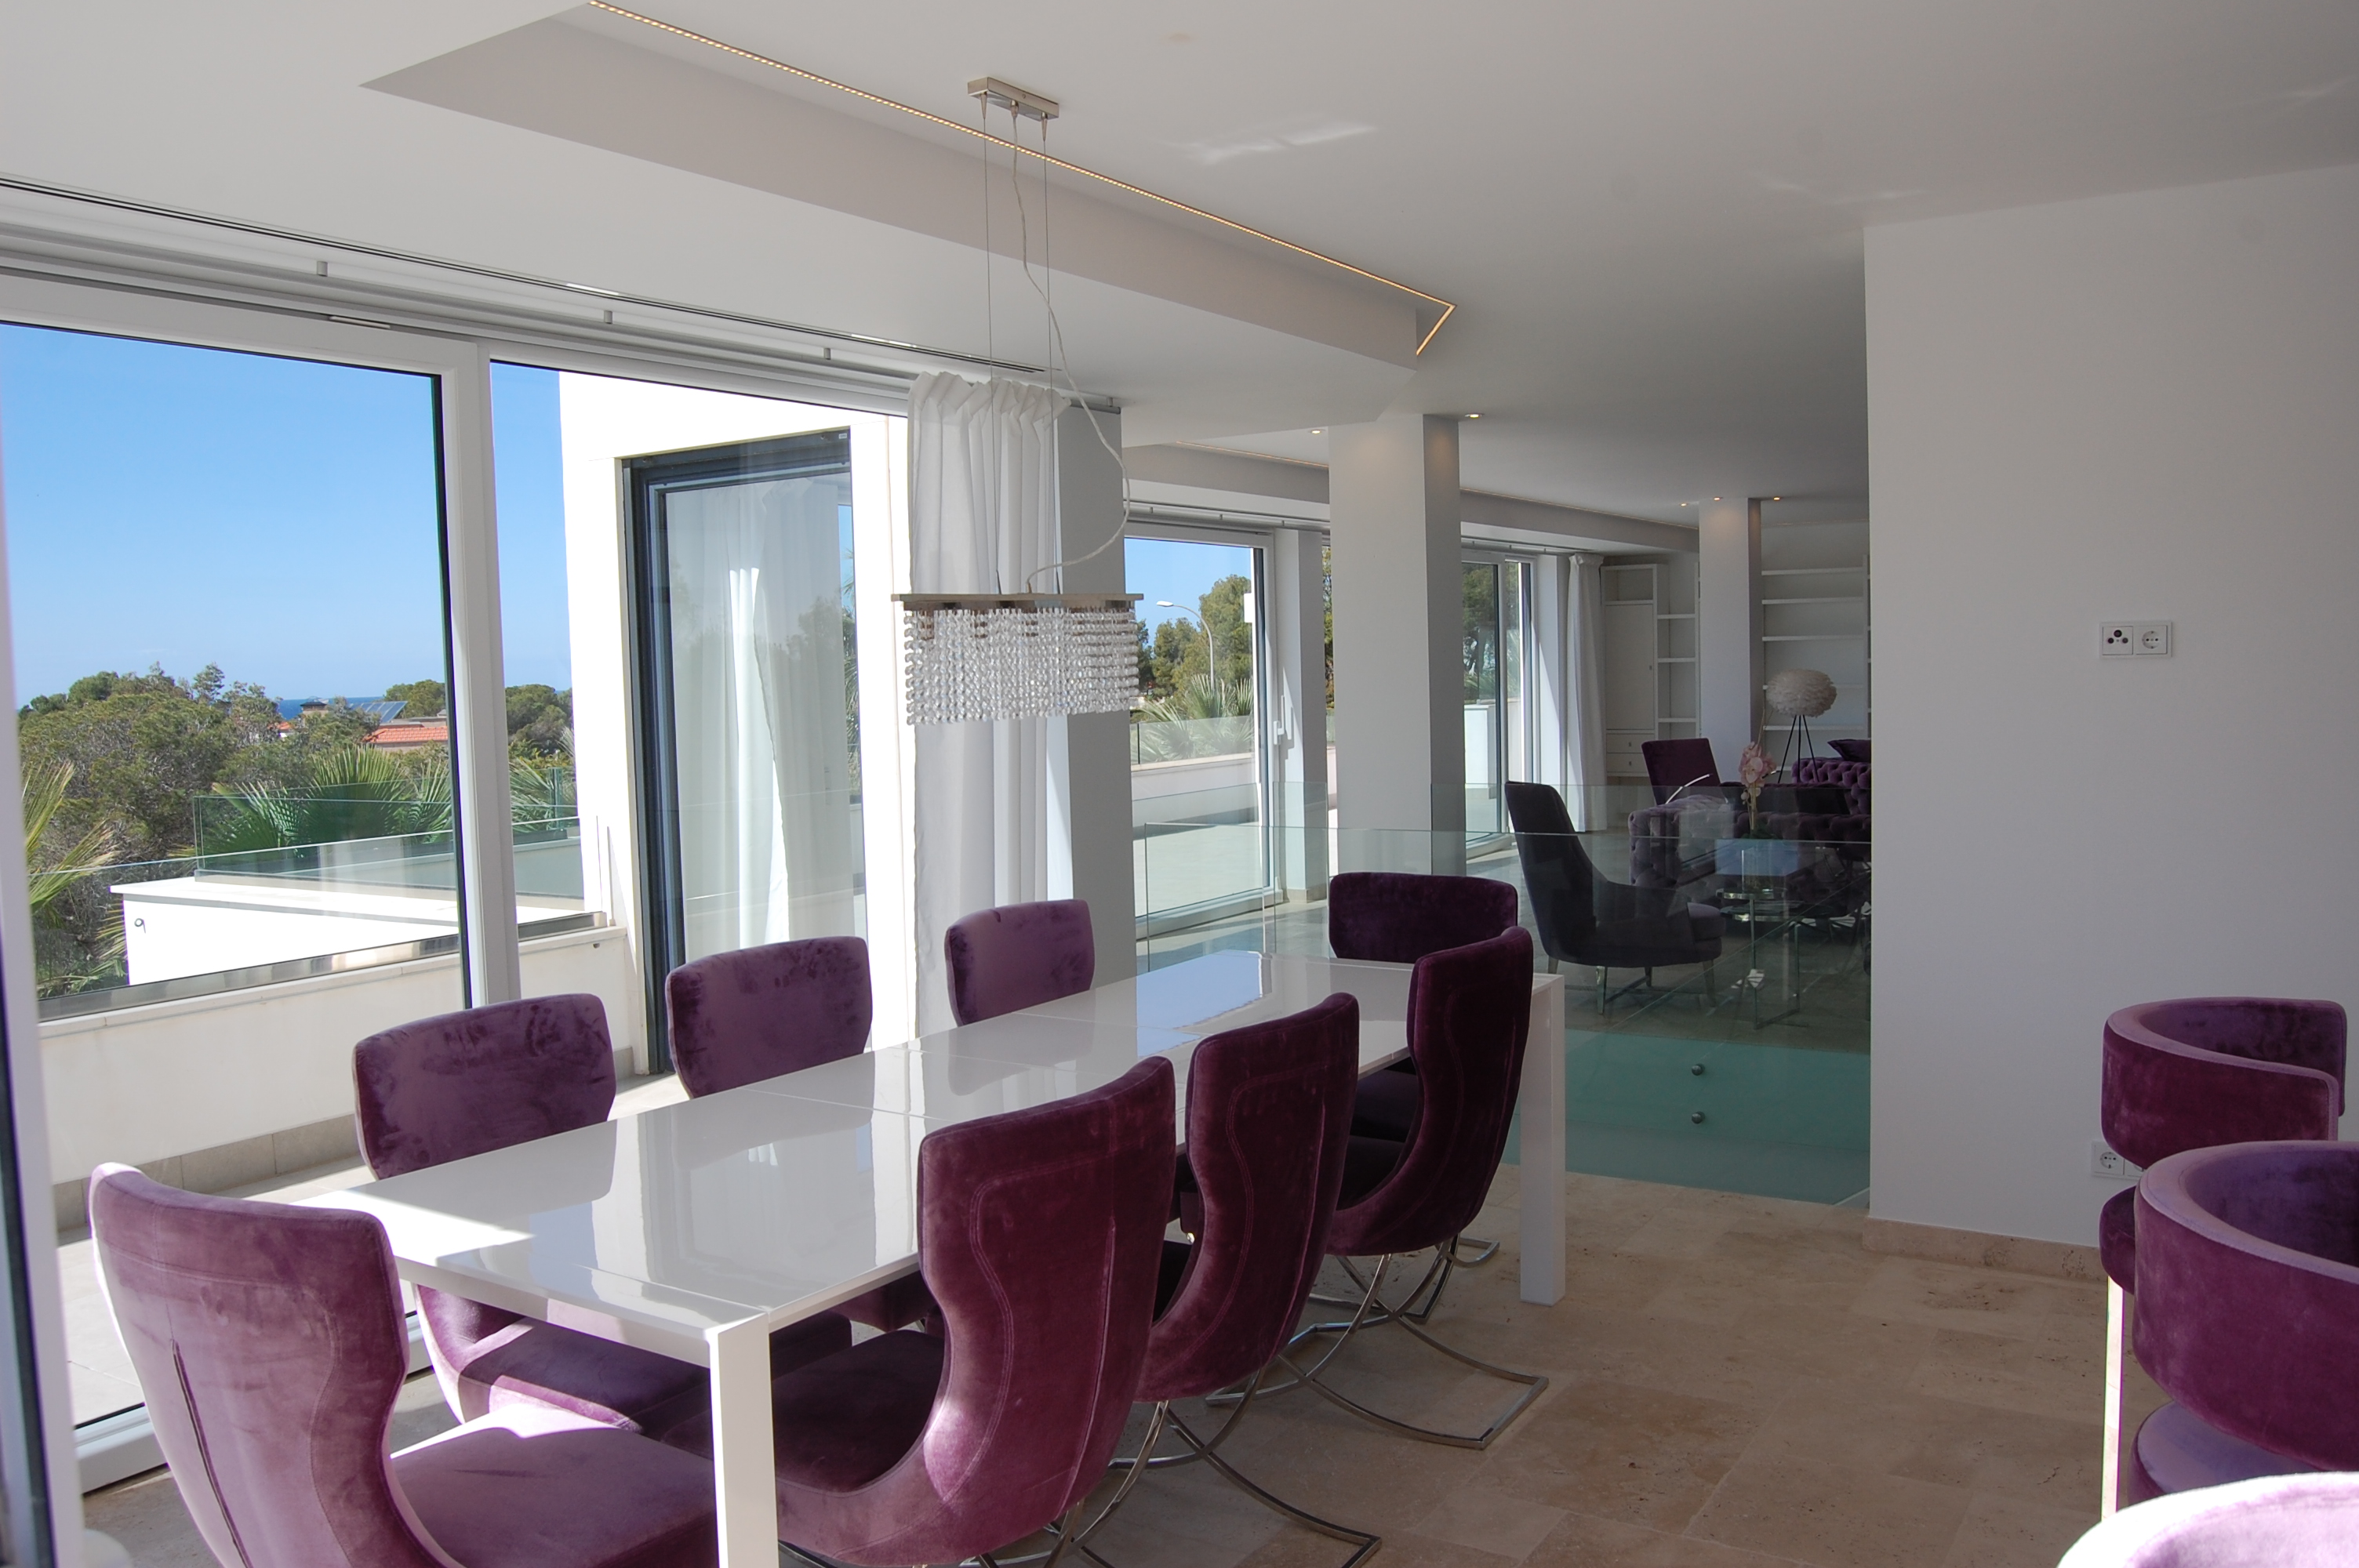 Komplett renovierte Luxusvilla in bester Lage in Santa Ponsa auf Mallorca mit traumhaftem Meerblick